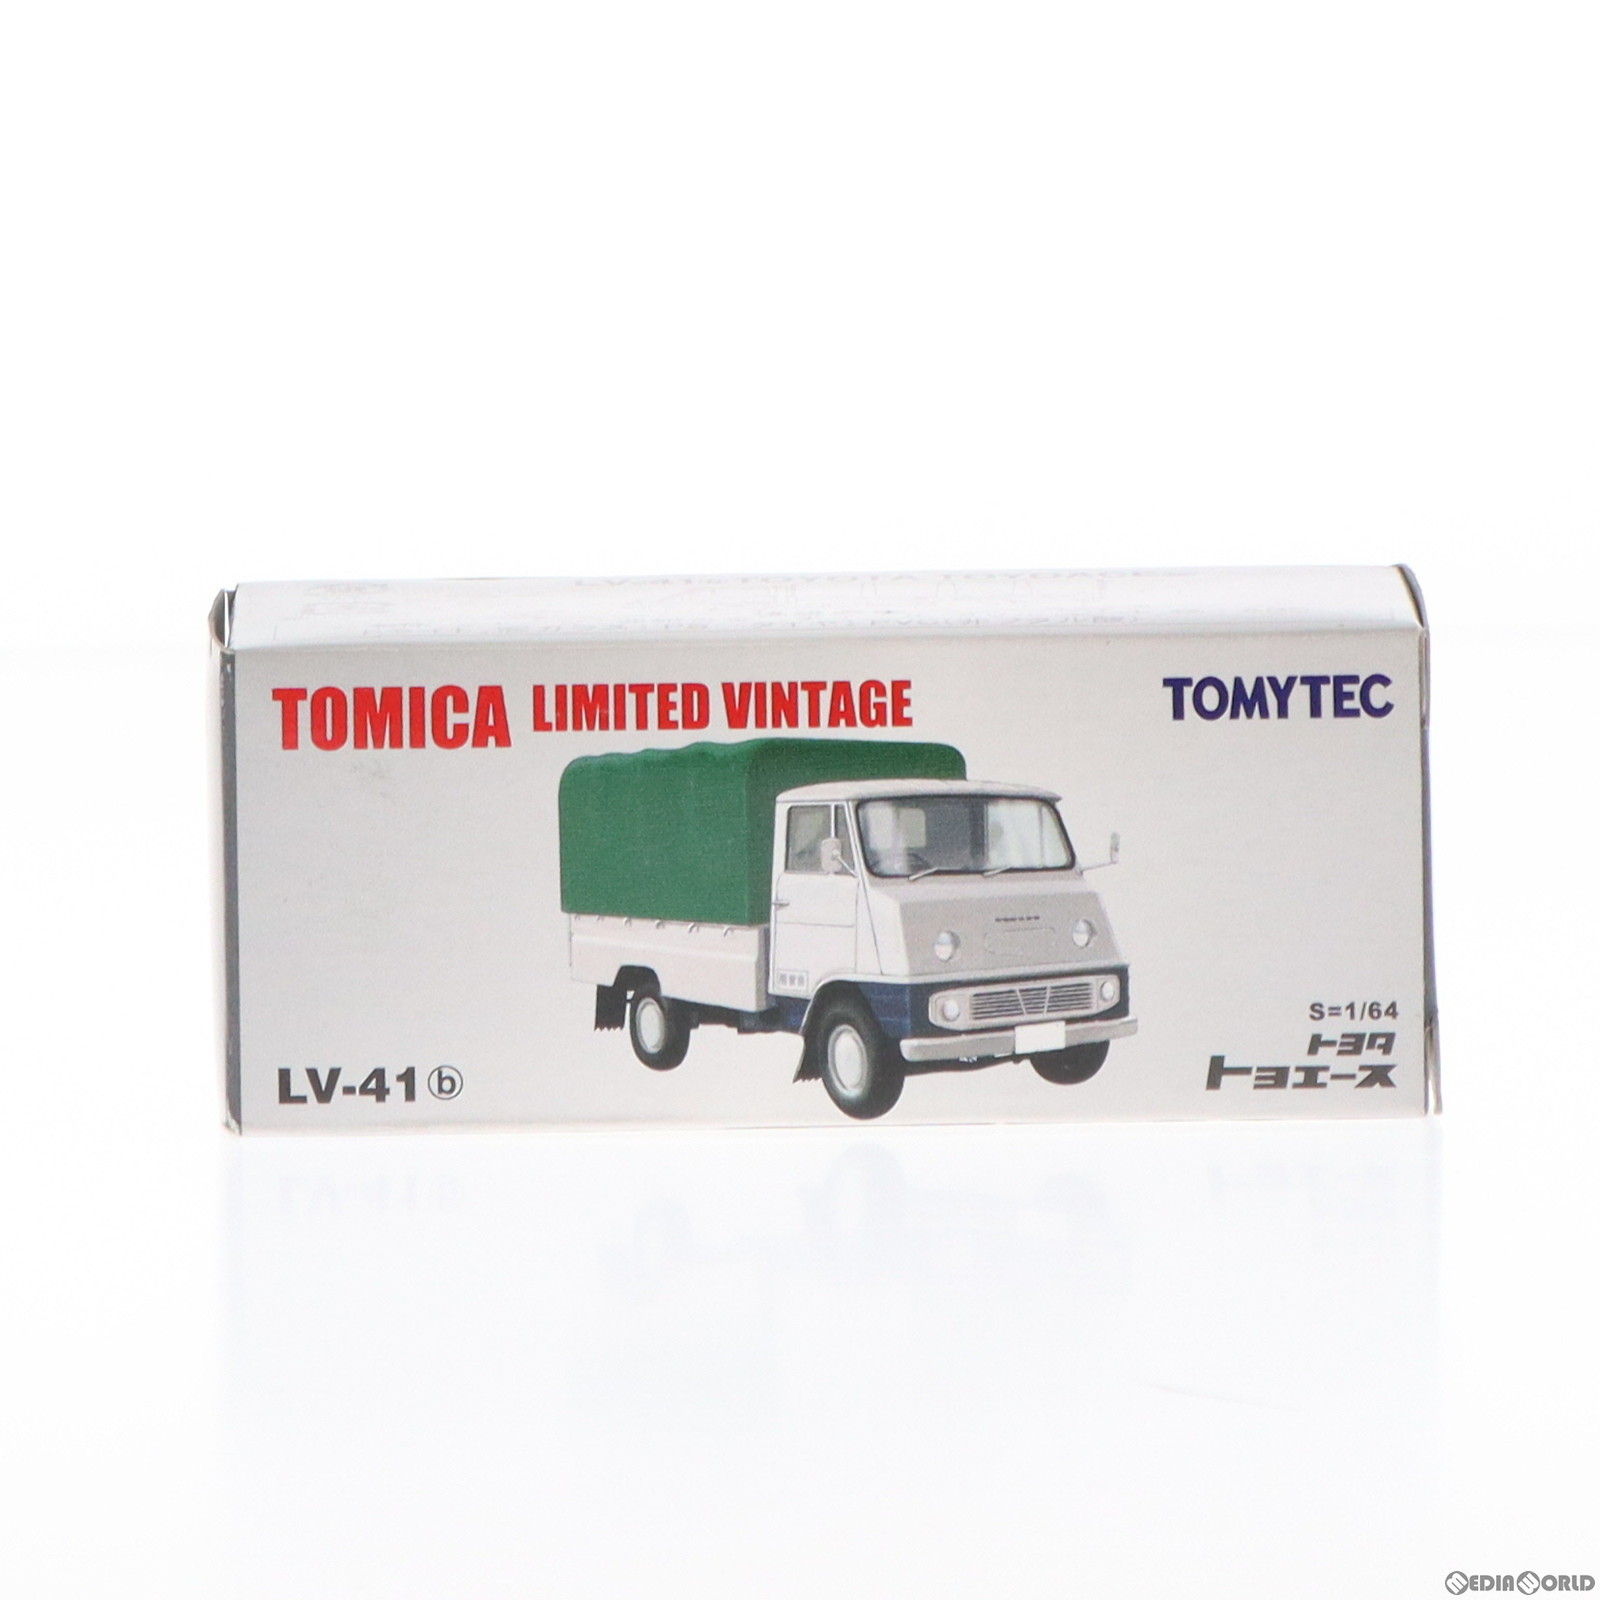 【中古即納】[MDL]トミカリミテッドヴィンテージ 1/64 TLV-41b トヨタ トヨエース(ホワイト×ブルー) 完成品 ミニカー(212126) TOMYTEC(